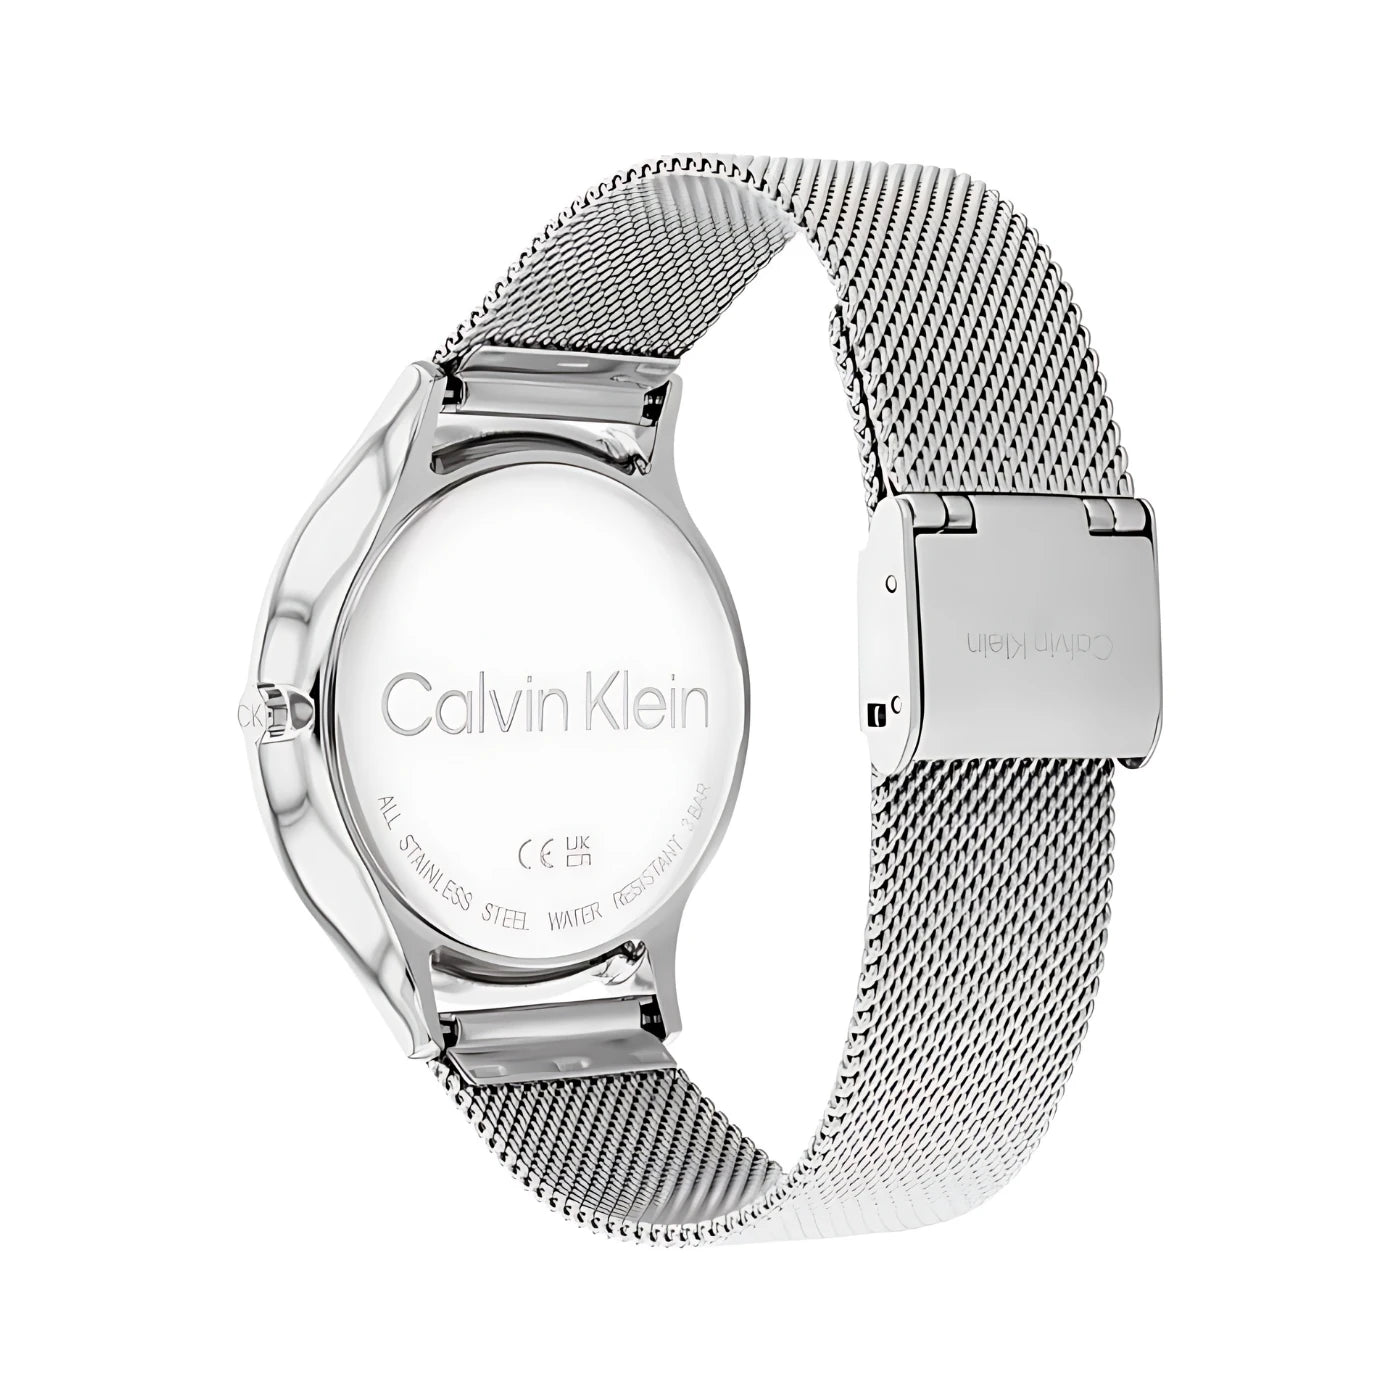 CALVIN KLEIN 25100004 TIMELESS WOMEN'S WATCH